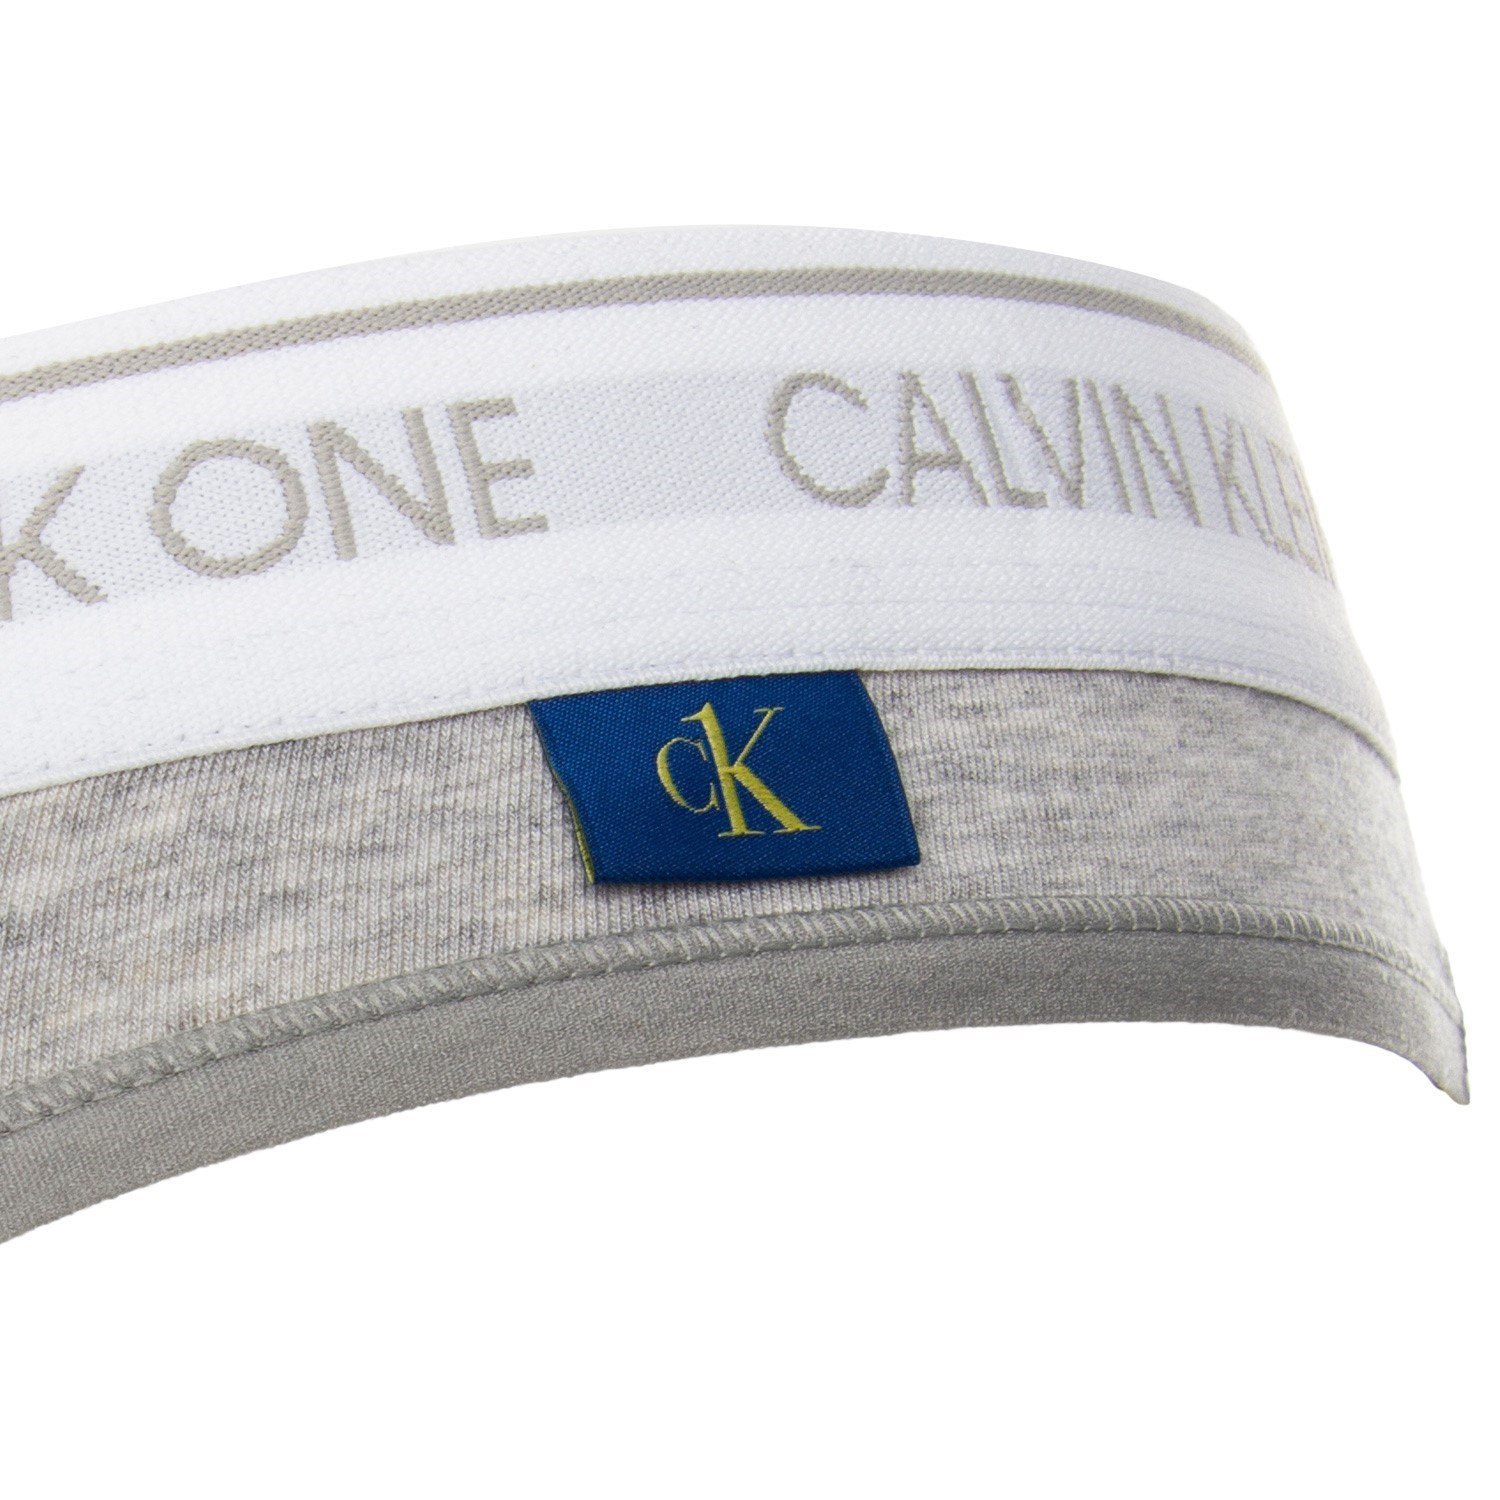 Calvin Klein, ONE Cotton Thong, Thong Briefs